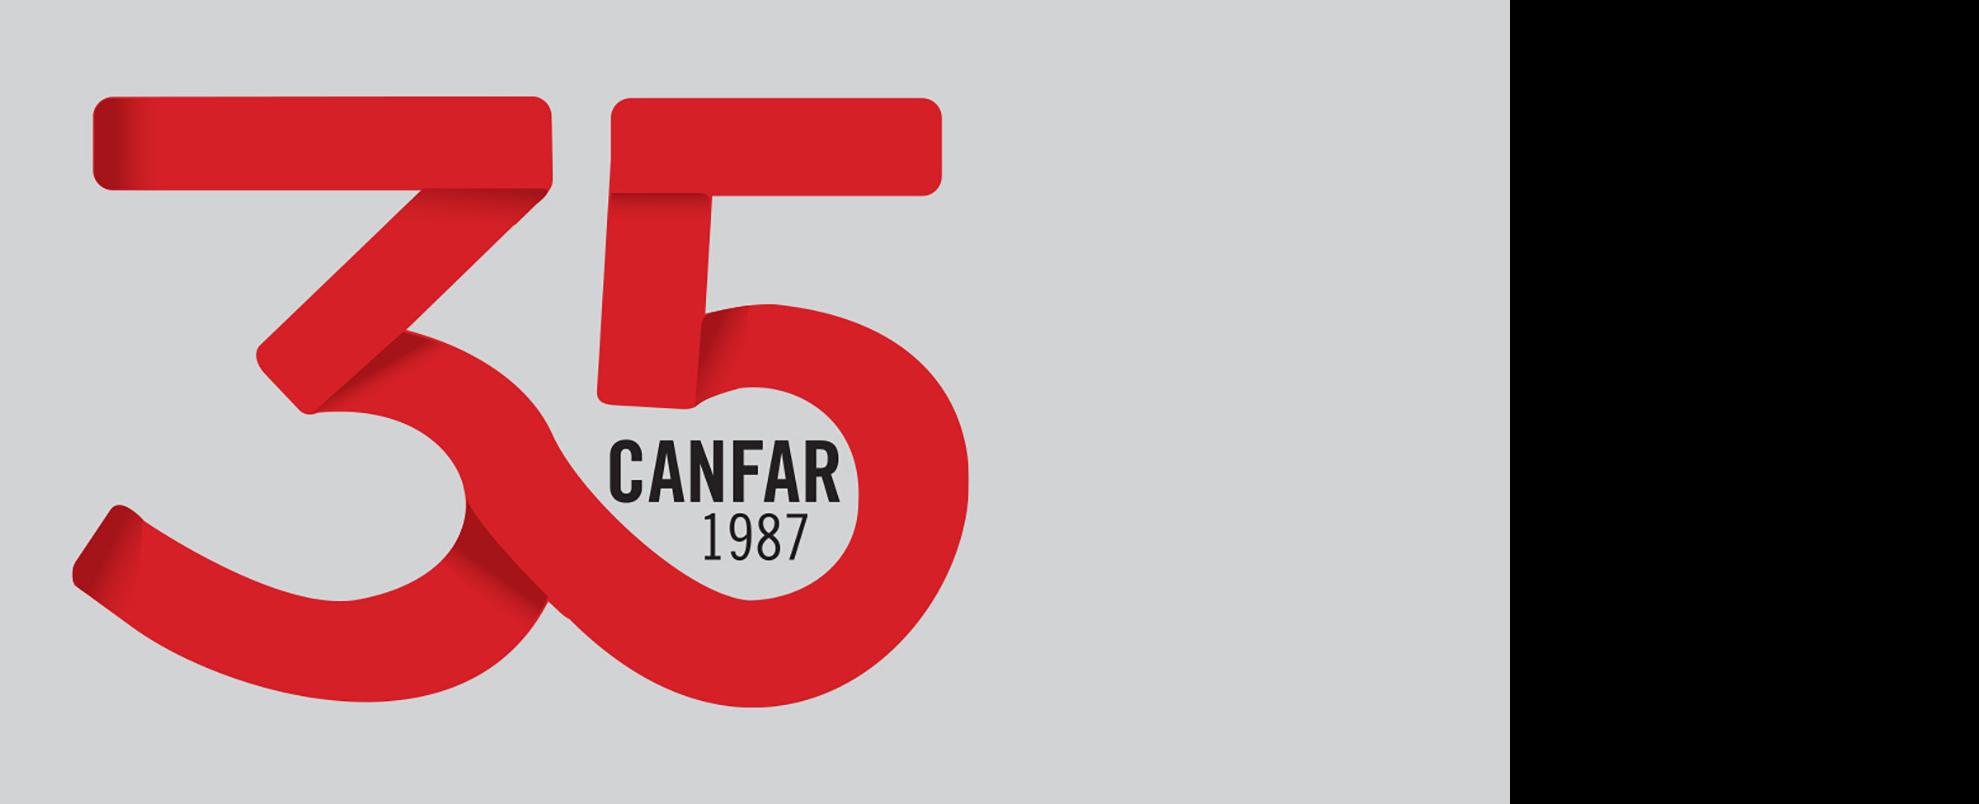 CANFAR 35th anniversary logo